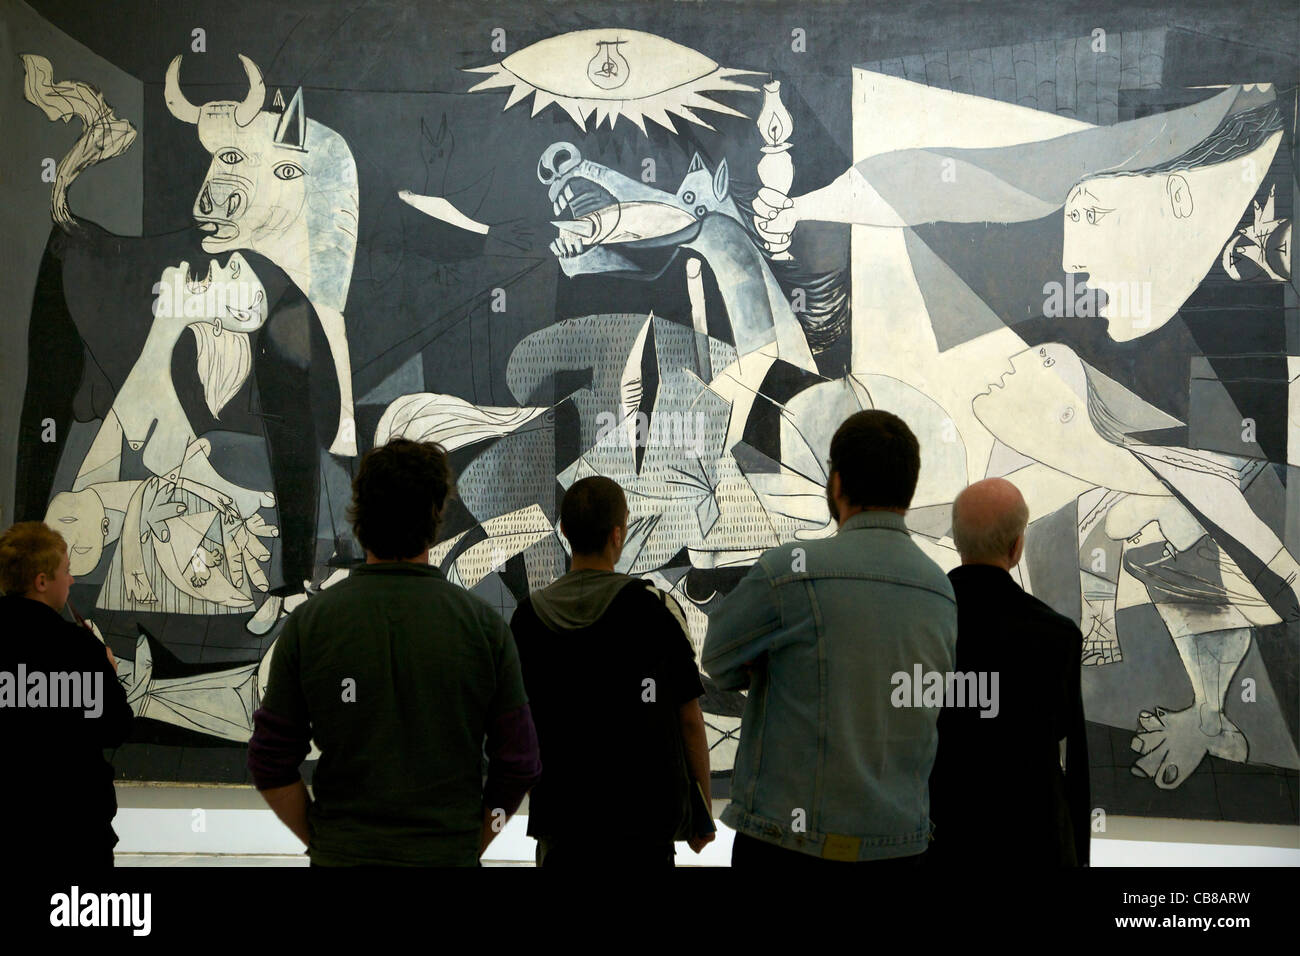 Picasso Guernica Aufkleber, Feuer und schreiender Mann, berühmtes